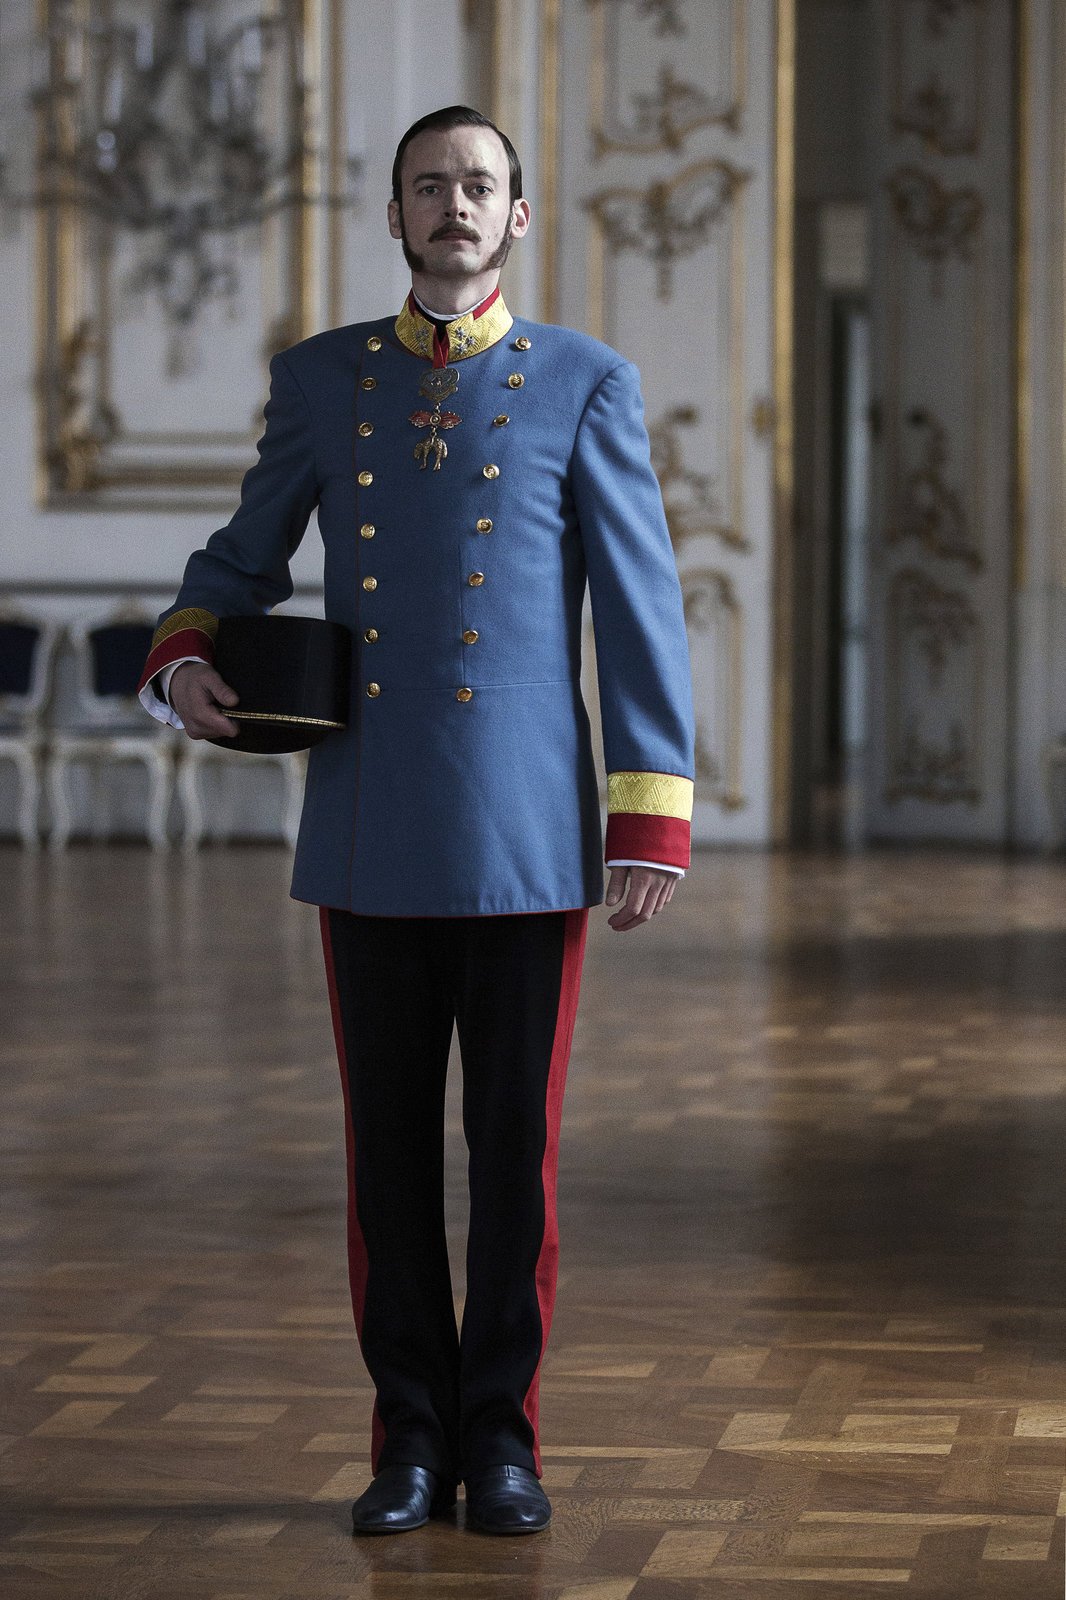 Uniformy císařského dvora byly zapůjčeny ve Vídni.